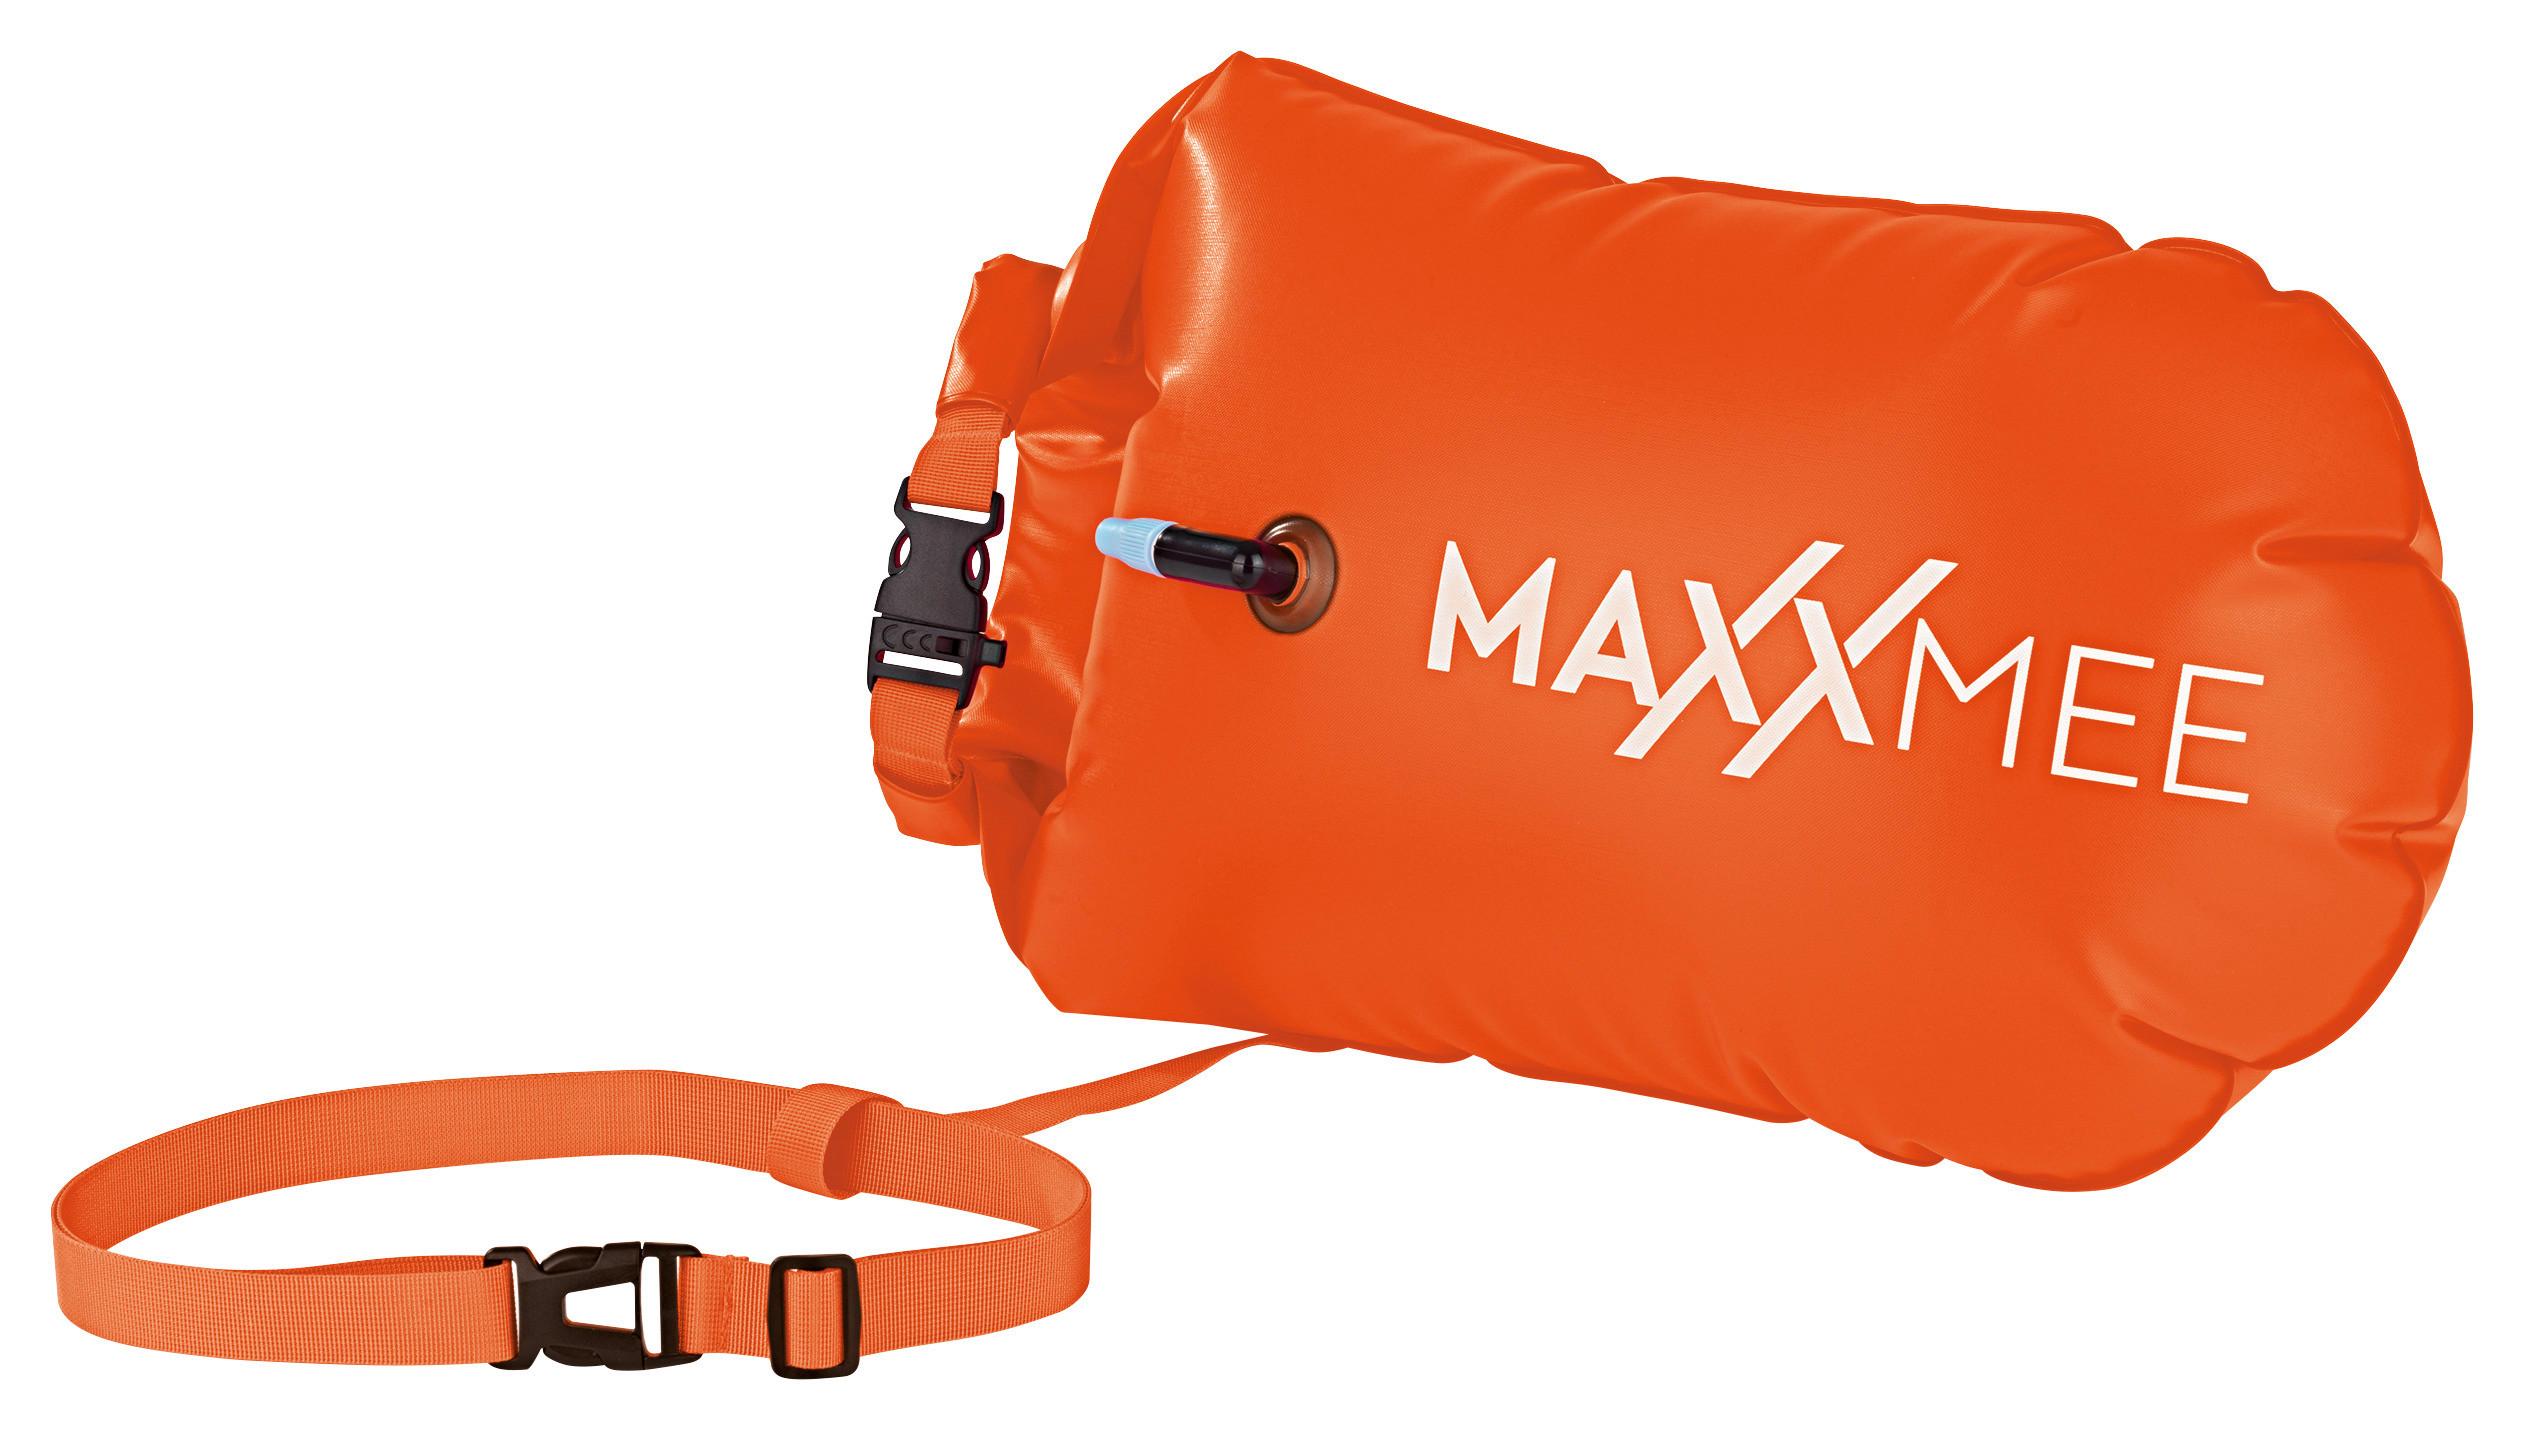 Schwimmkissen Maxxmee Schwimmboje Orange - Orange, Basics, Kunststoff (37,5/72cm)